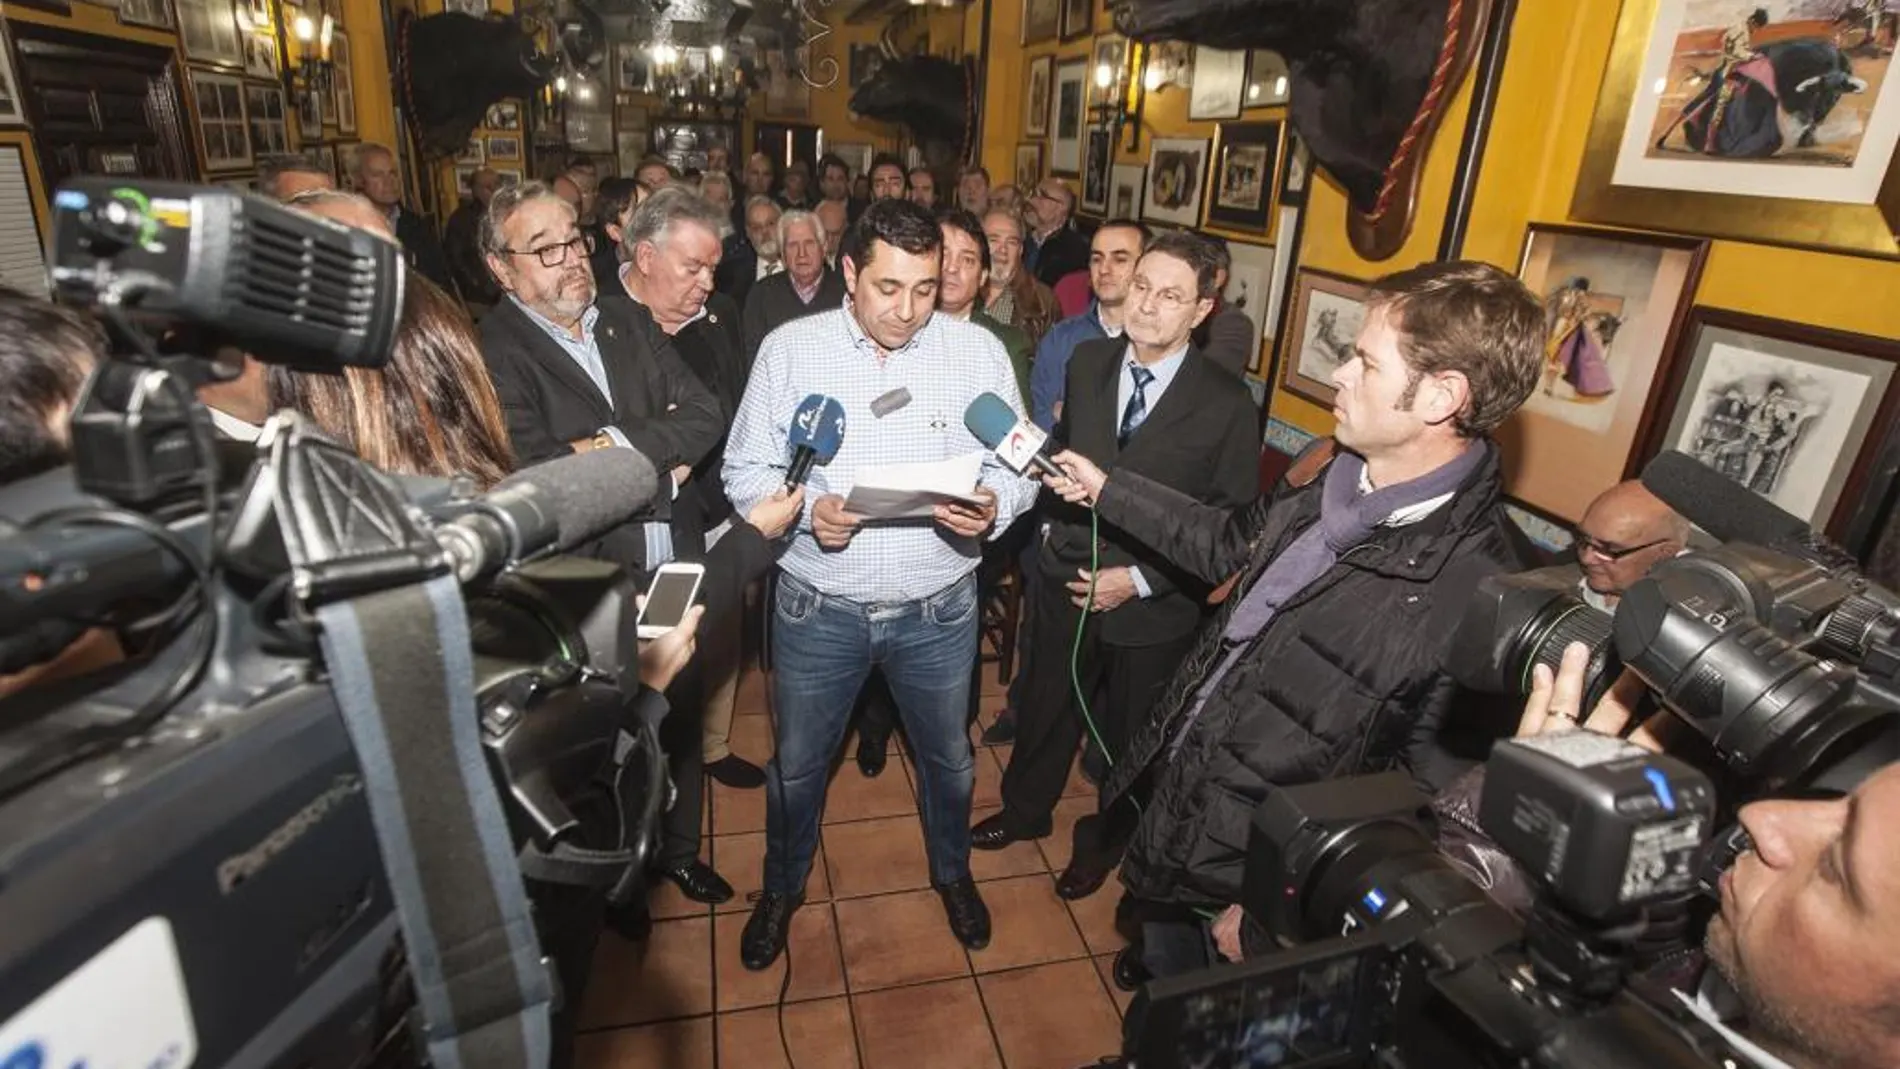 Vicente Nogueroles, presidente de la Unión Taurina de Valencia, lee un comunicado a favor de la tauromaquia